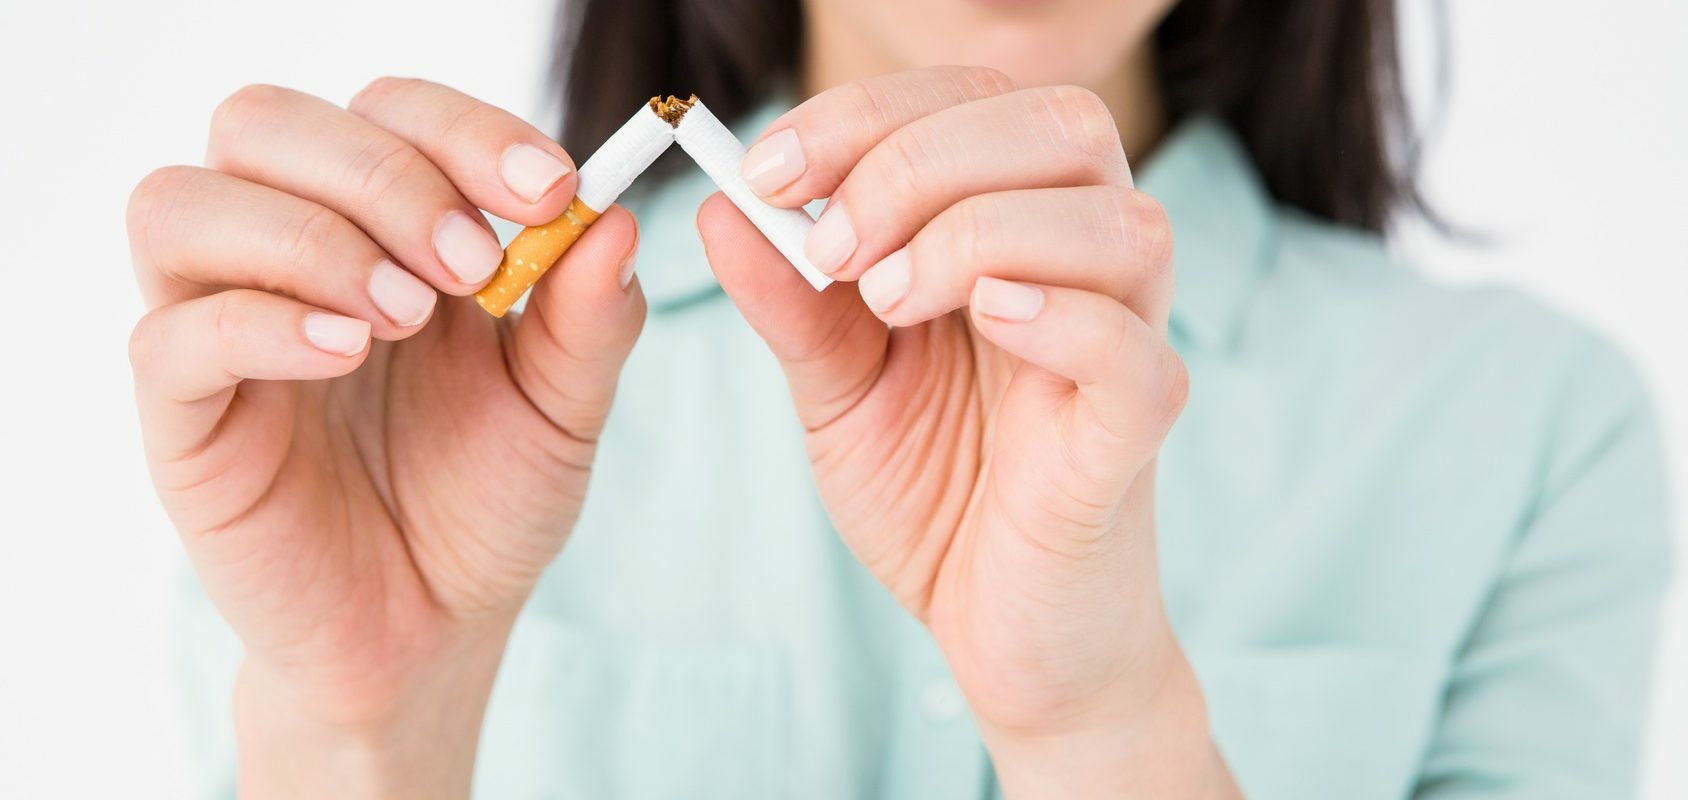 Jak rzucić palenie w 7 krokach? Jakie są sposoby na rzucenie palenia papierosów? Kobieta w błękitnej koszuli przepoławia papierosa na znak rzucenia nałogu.